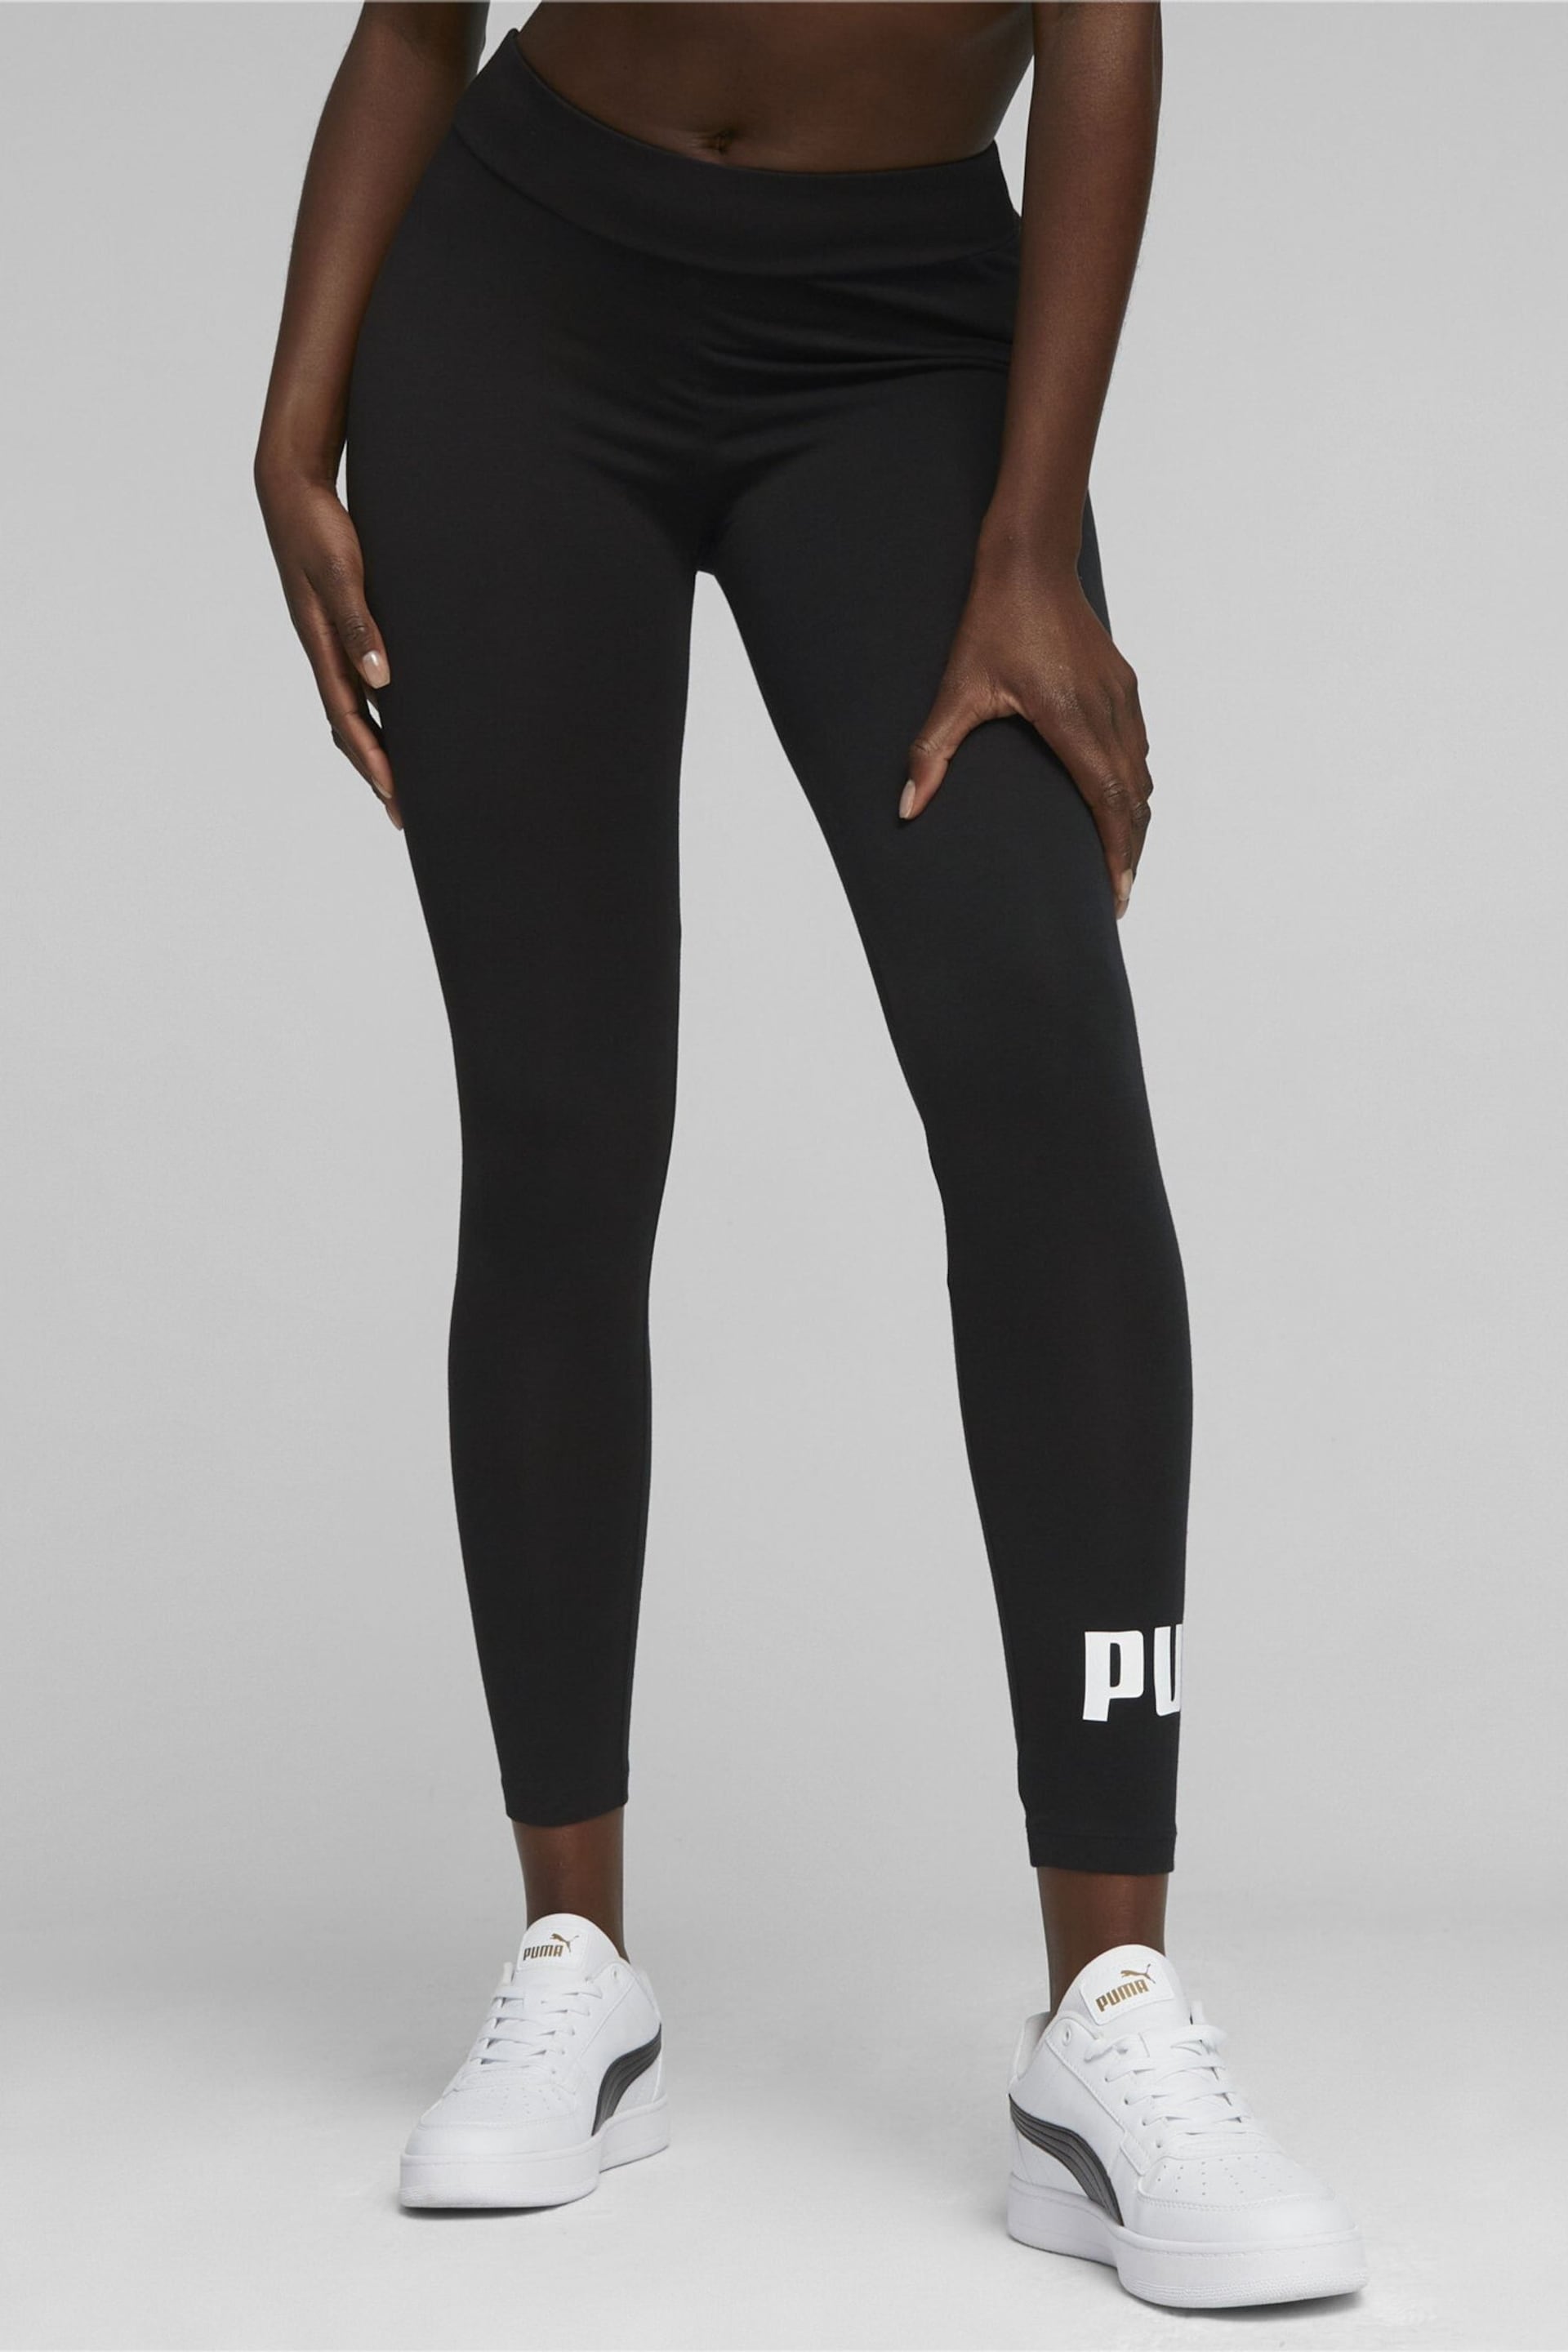 Puma Black Essentials Leggings - Image 1 of 1